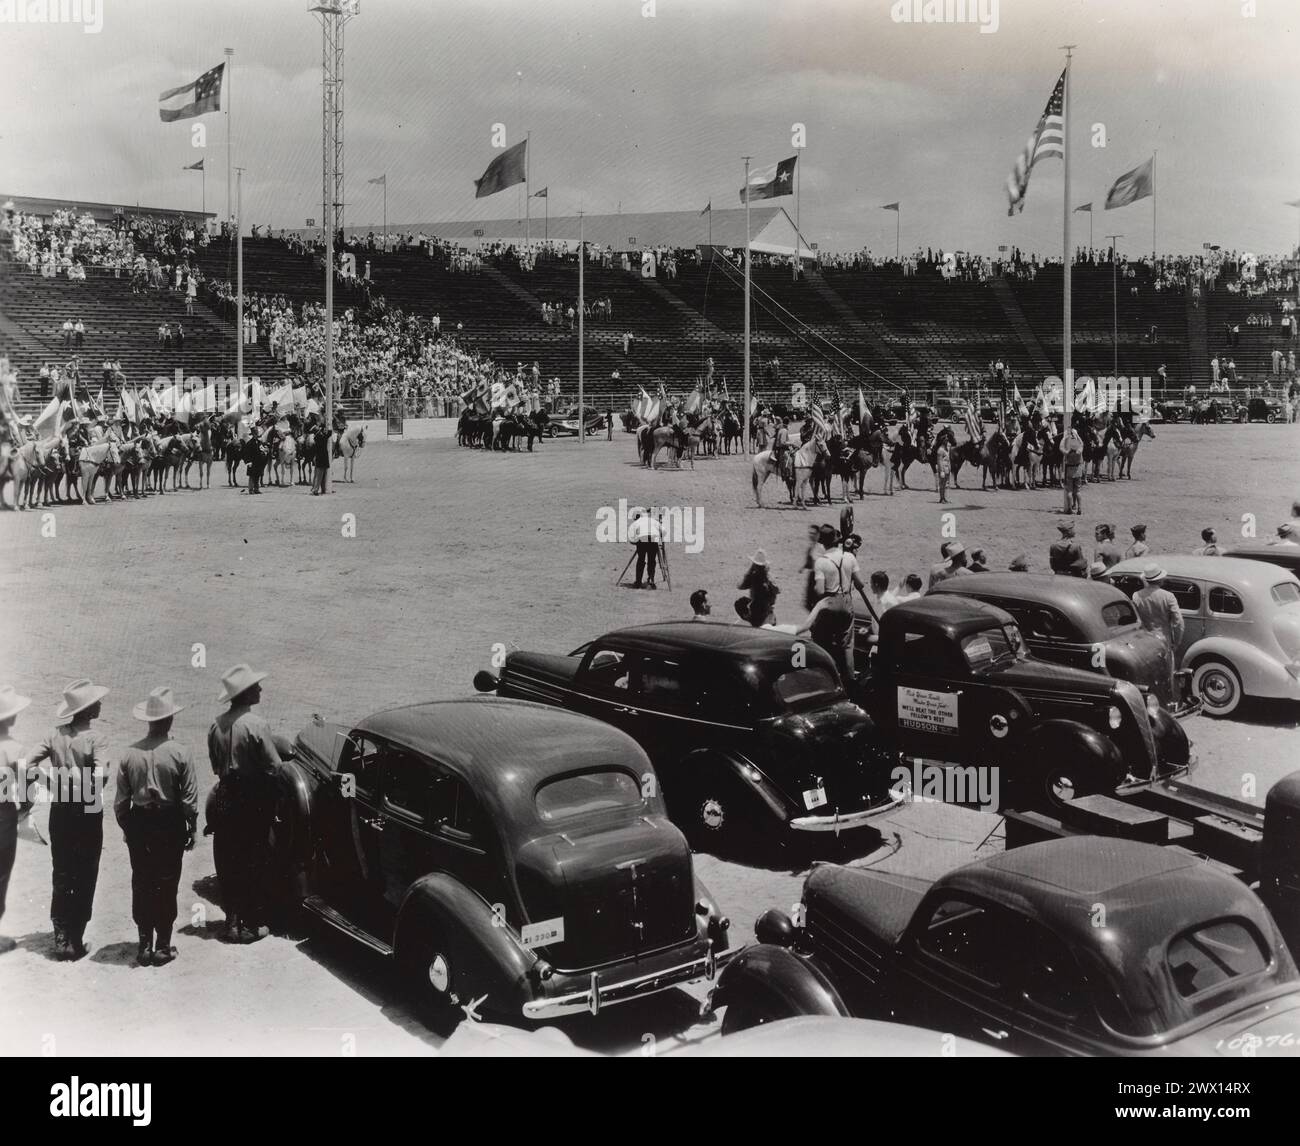 Texas Centennial, Dallas, Texas, 6-12 juin 1936. Hommes de l'armée américaine mettant en place les Stars & Stripes - cérémonie du drapeau CA. Juin 1936 Banque D'Images